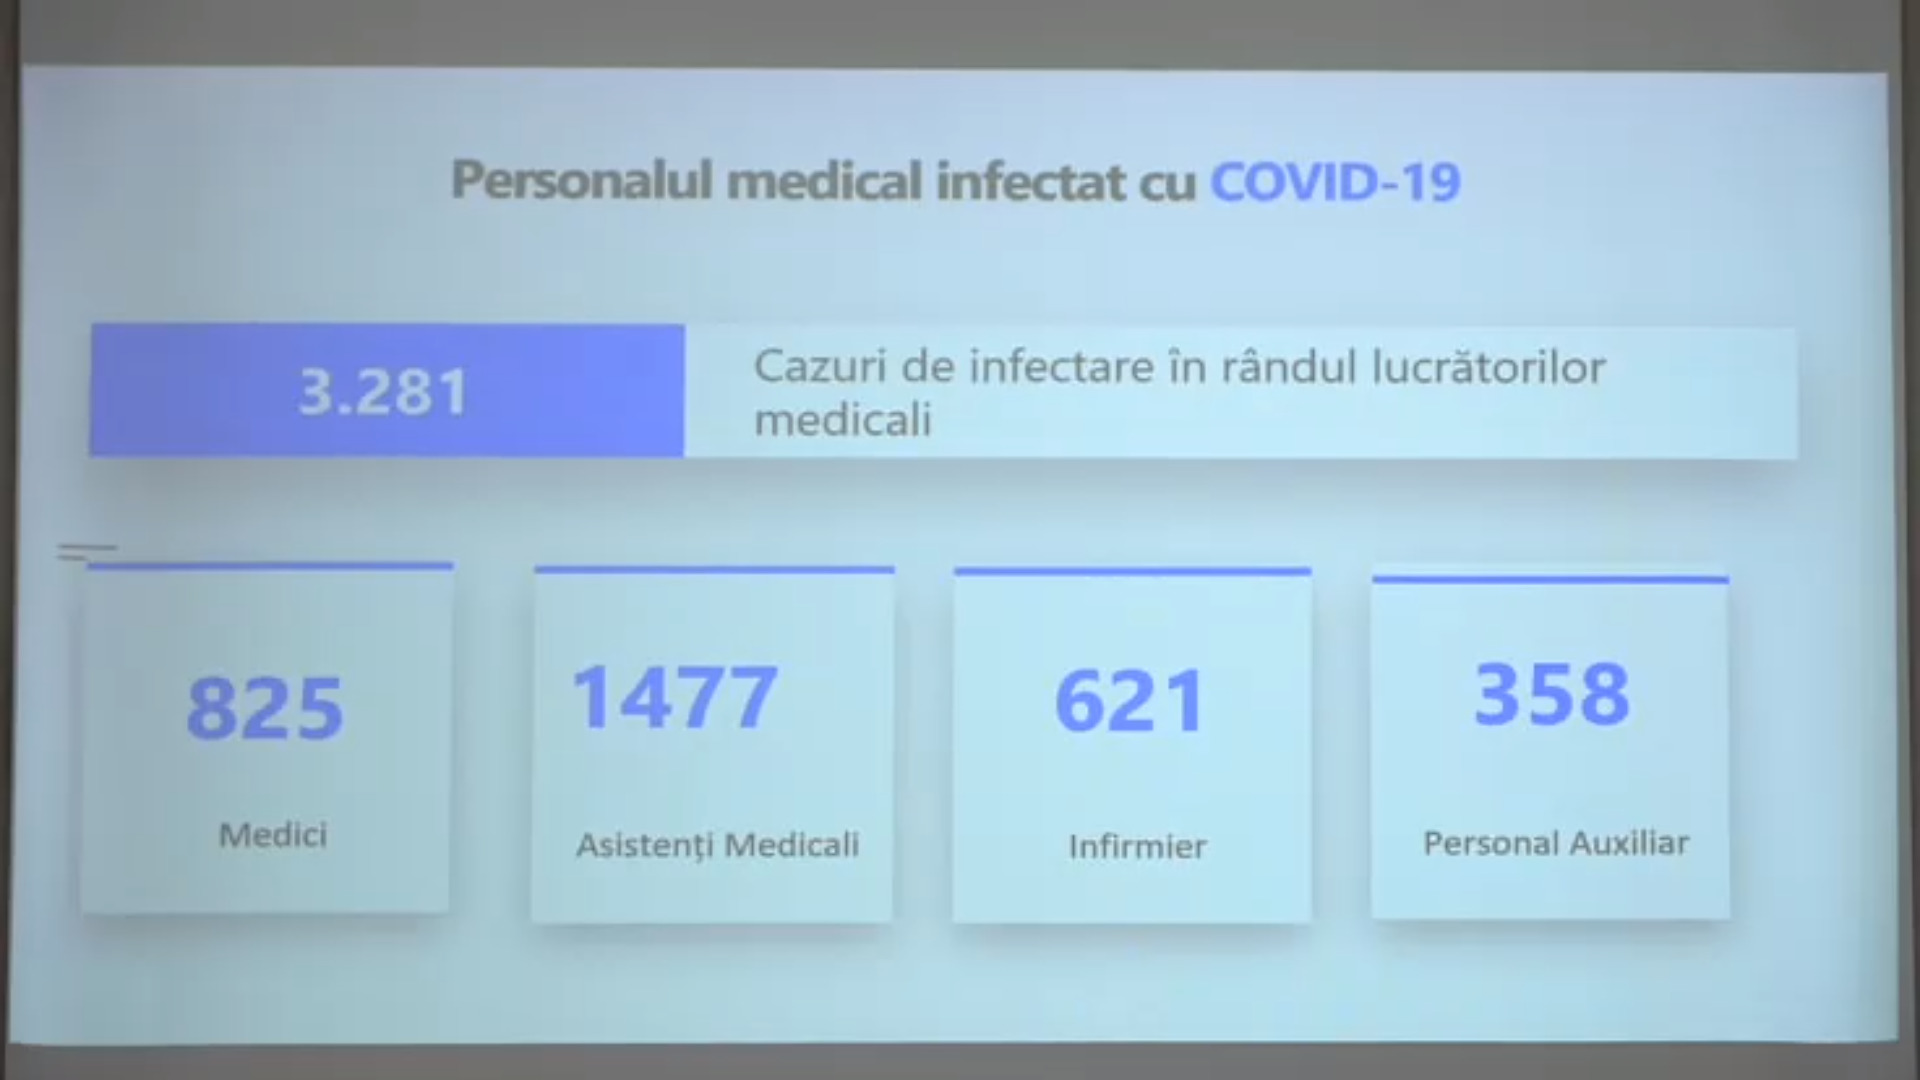 Aproape 3 300 de lucrători medicali din Republica Moldova s-au infectat cu noul coronavirus. Majoritatea sunt asistenți medicali